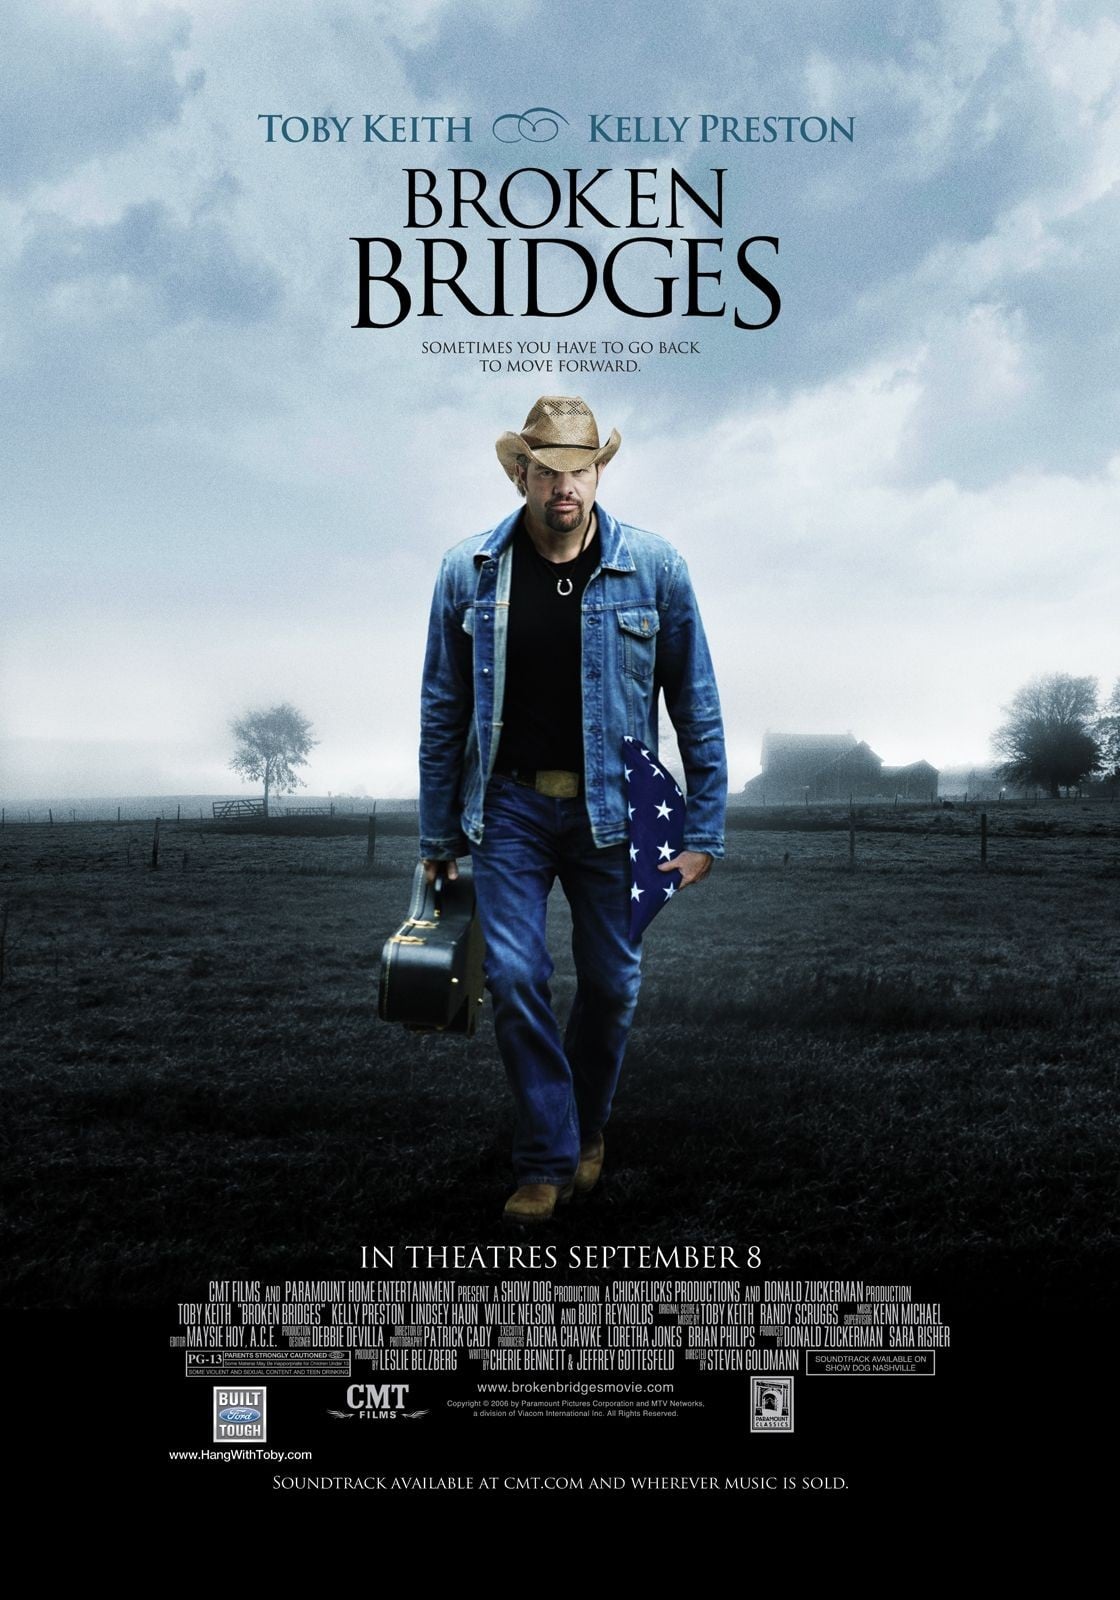 Plakat von "Broken Bridges"